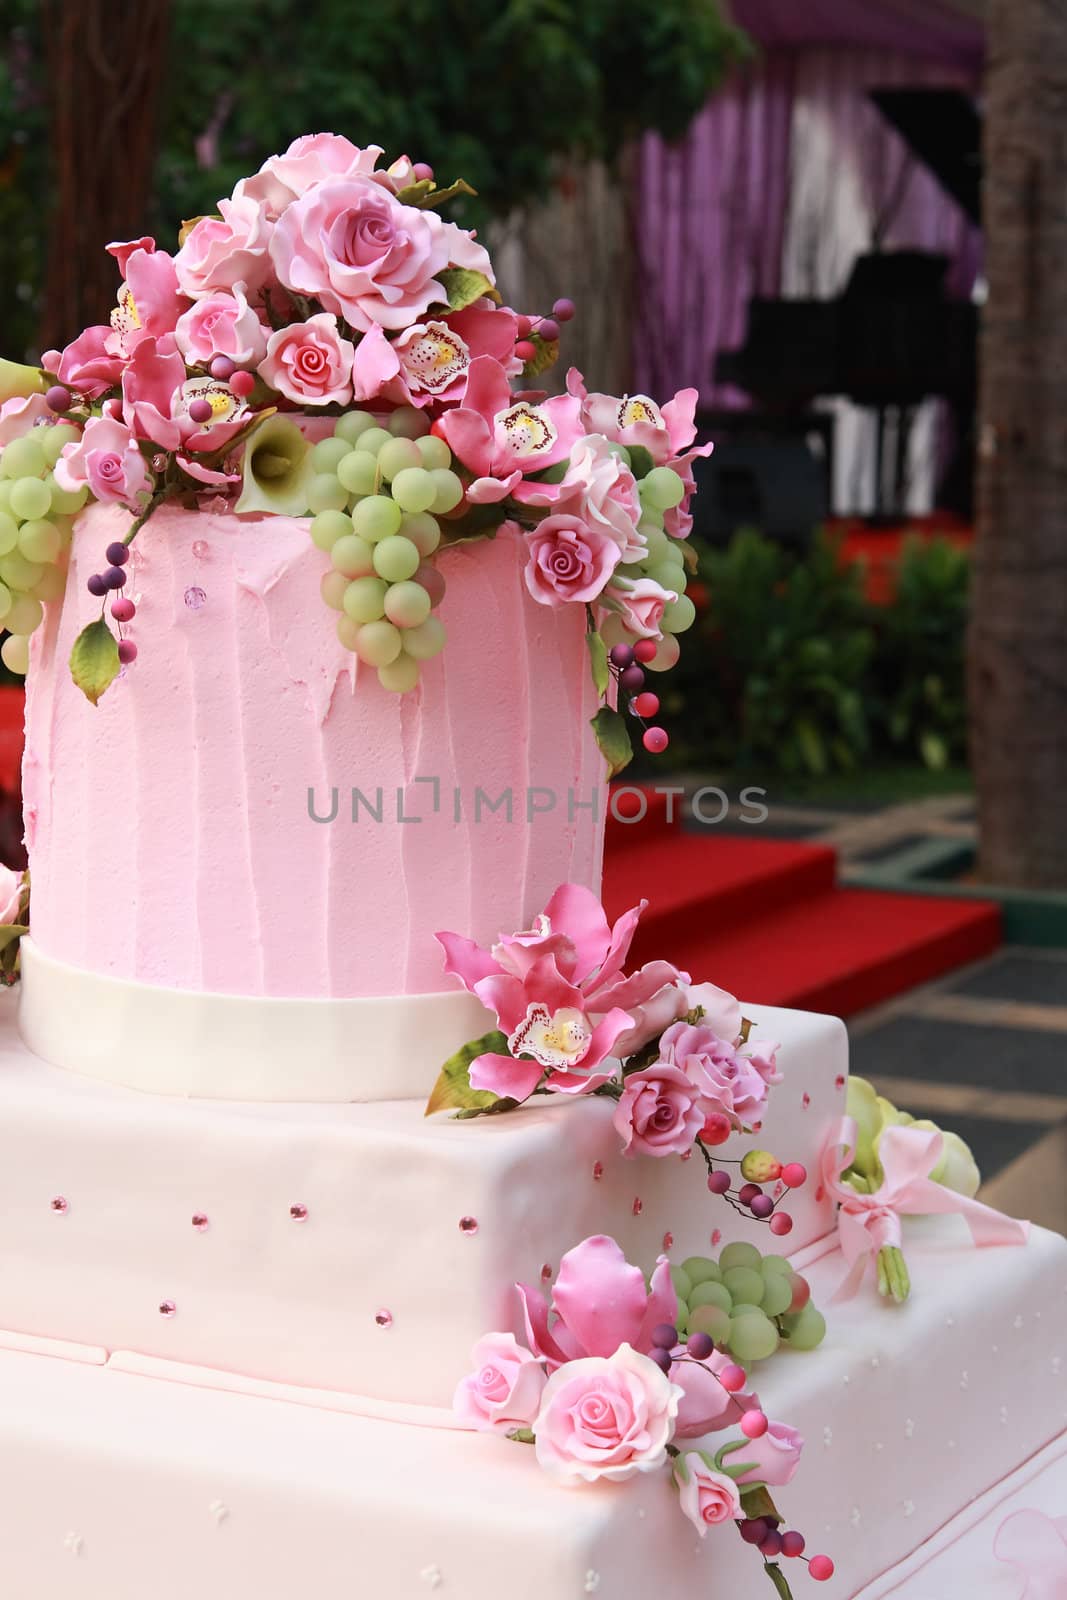 Multi layered wedding cake by photosoup